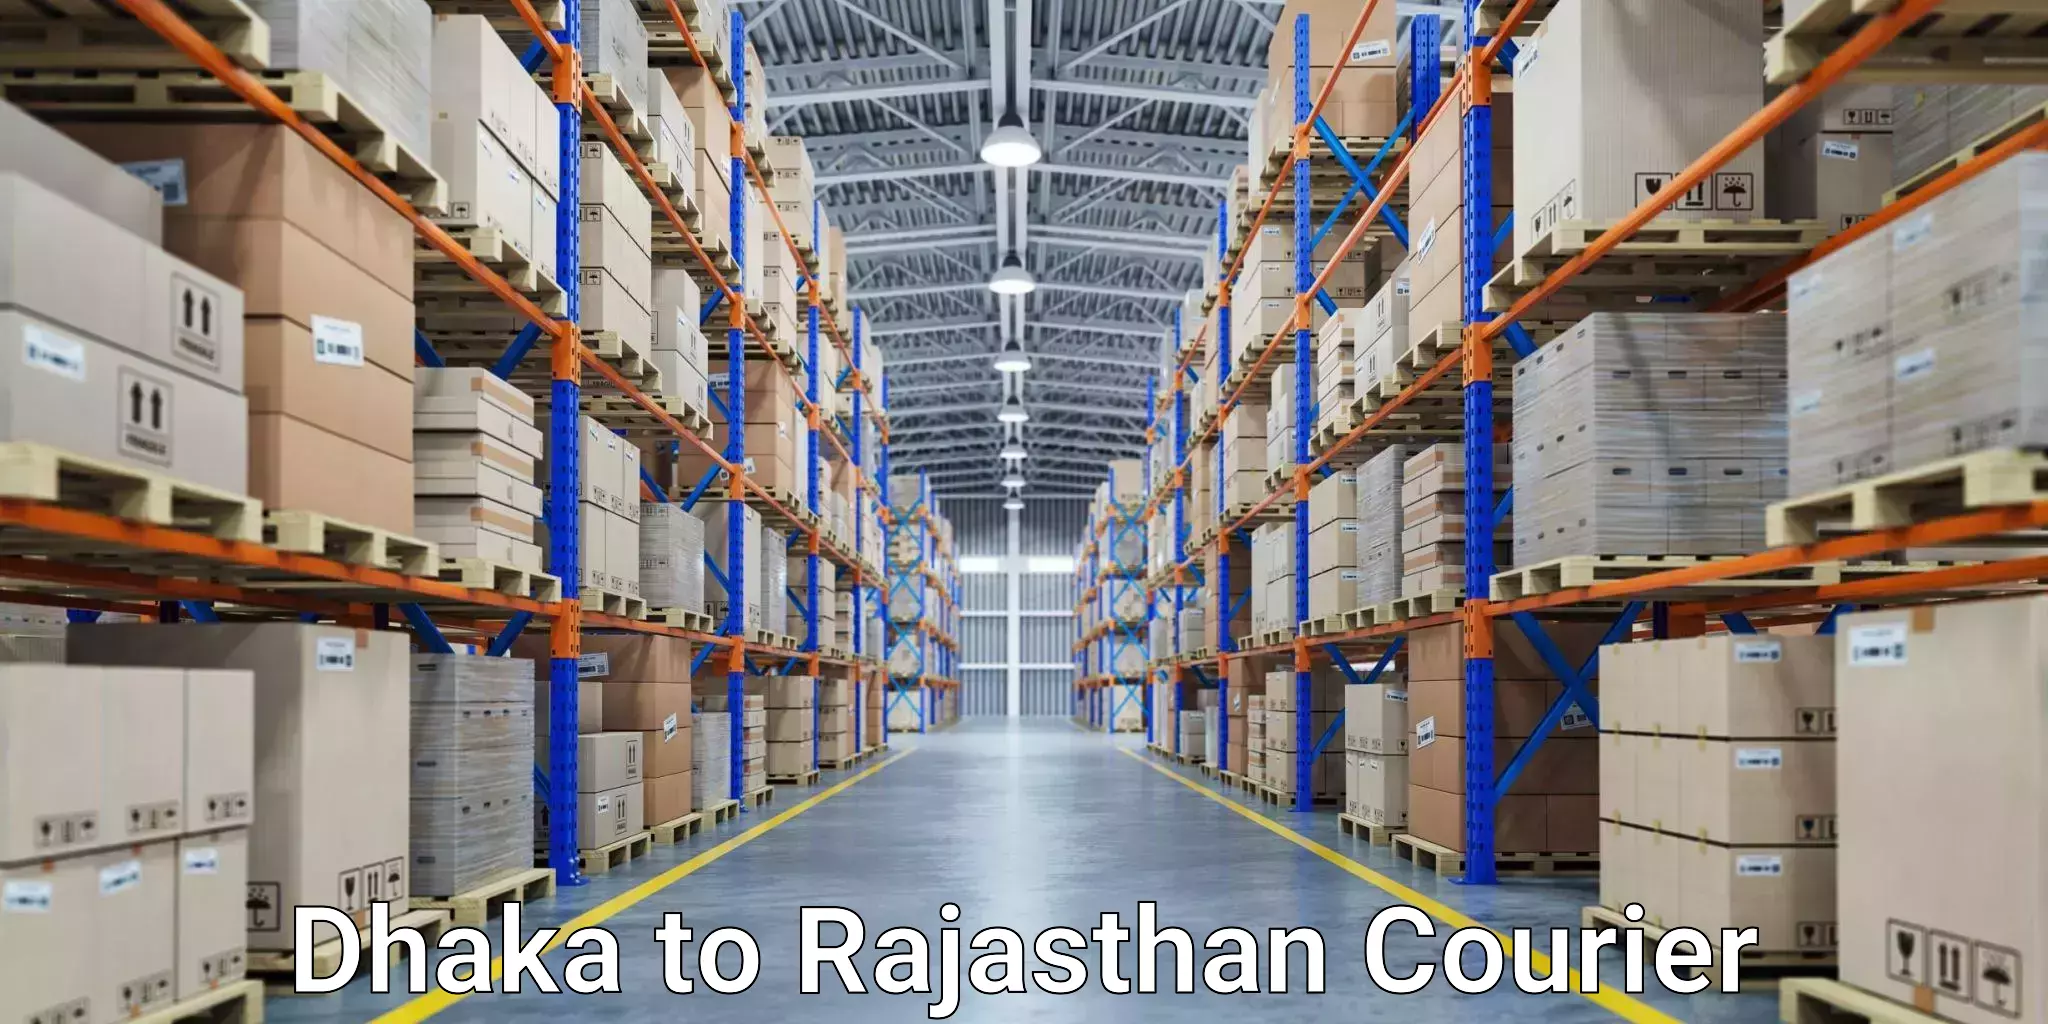 Digital courier platforms Dhaka to Rajasthan